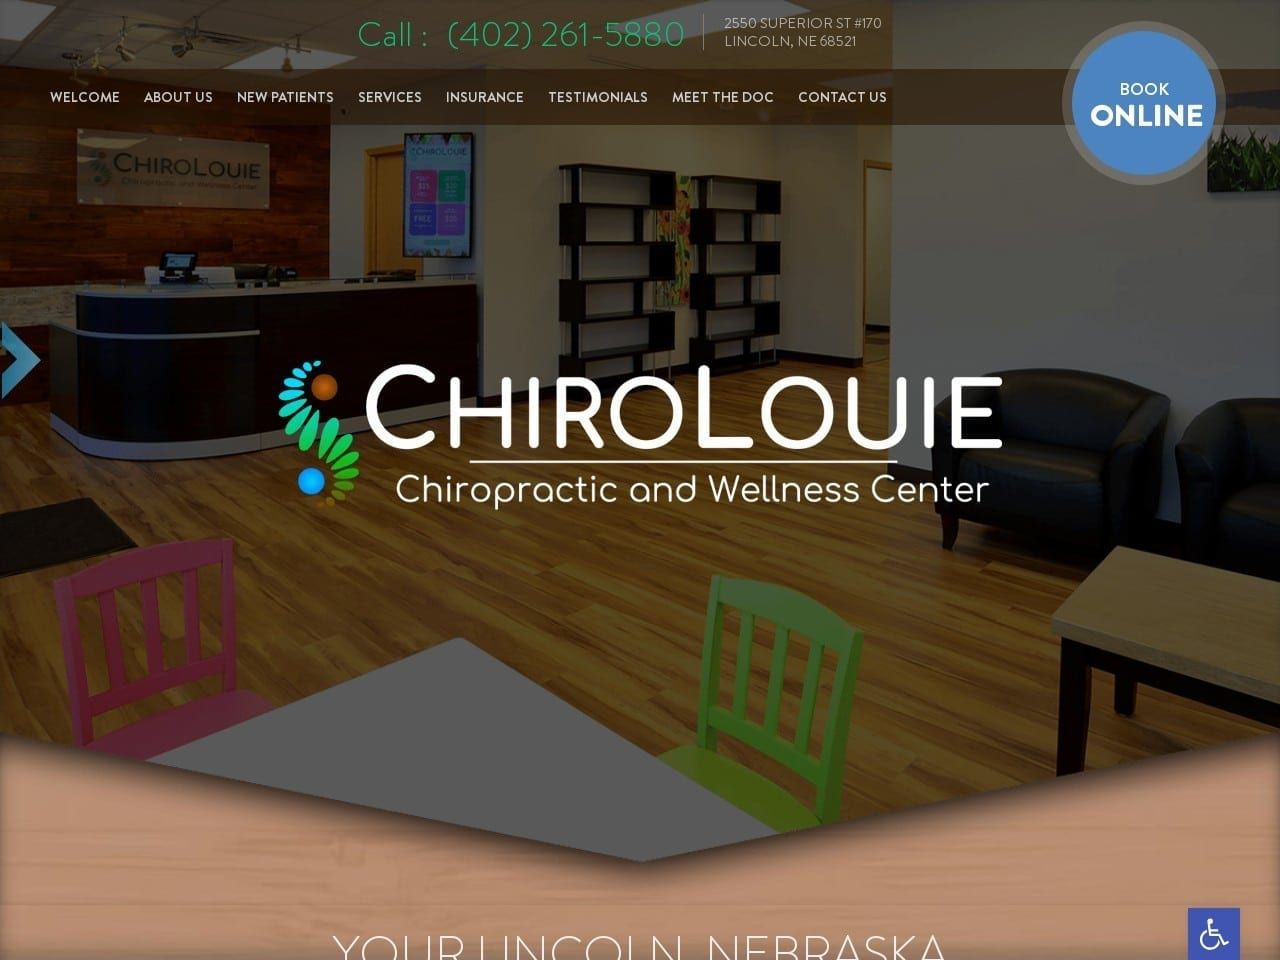 Chiro Louie Website Screenshot From Url Chirolouie.com